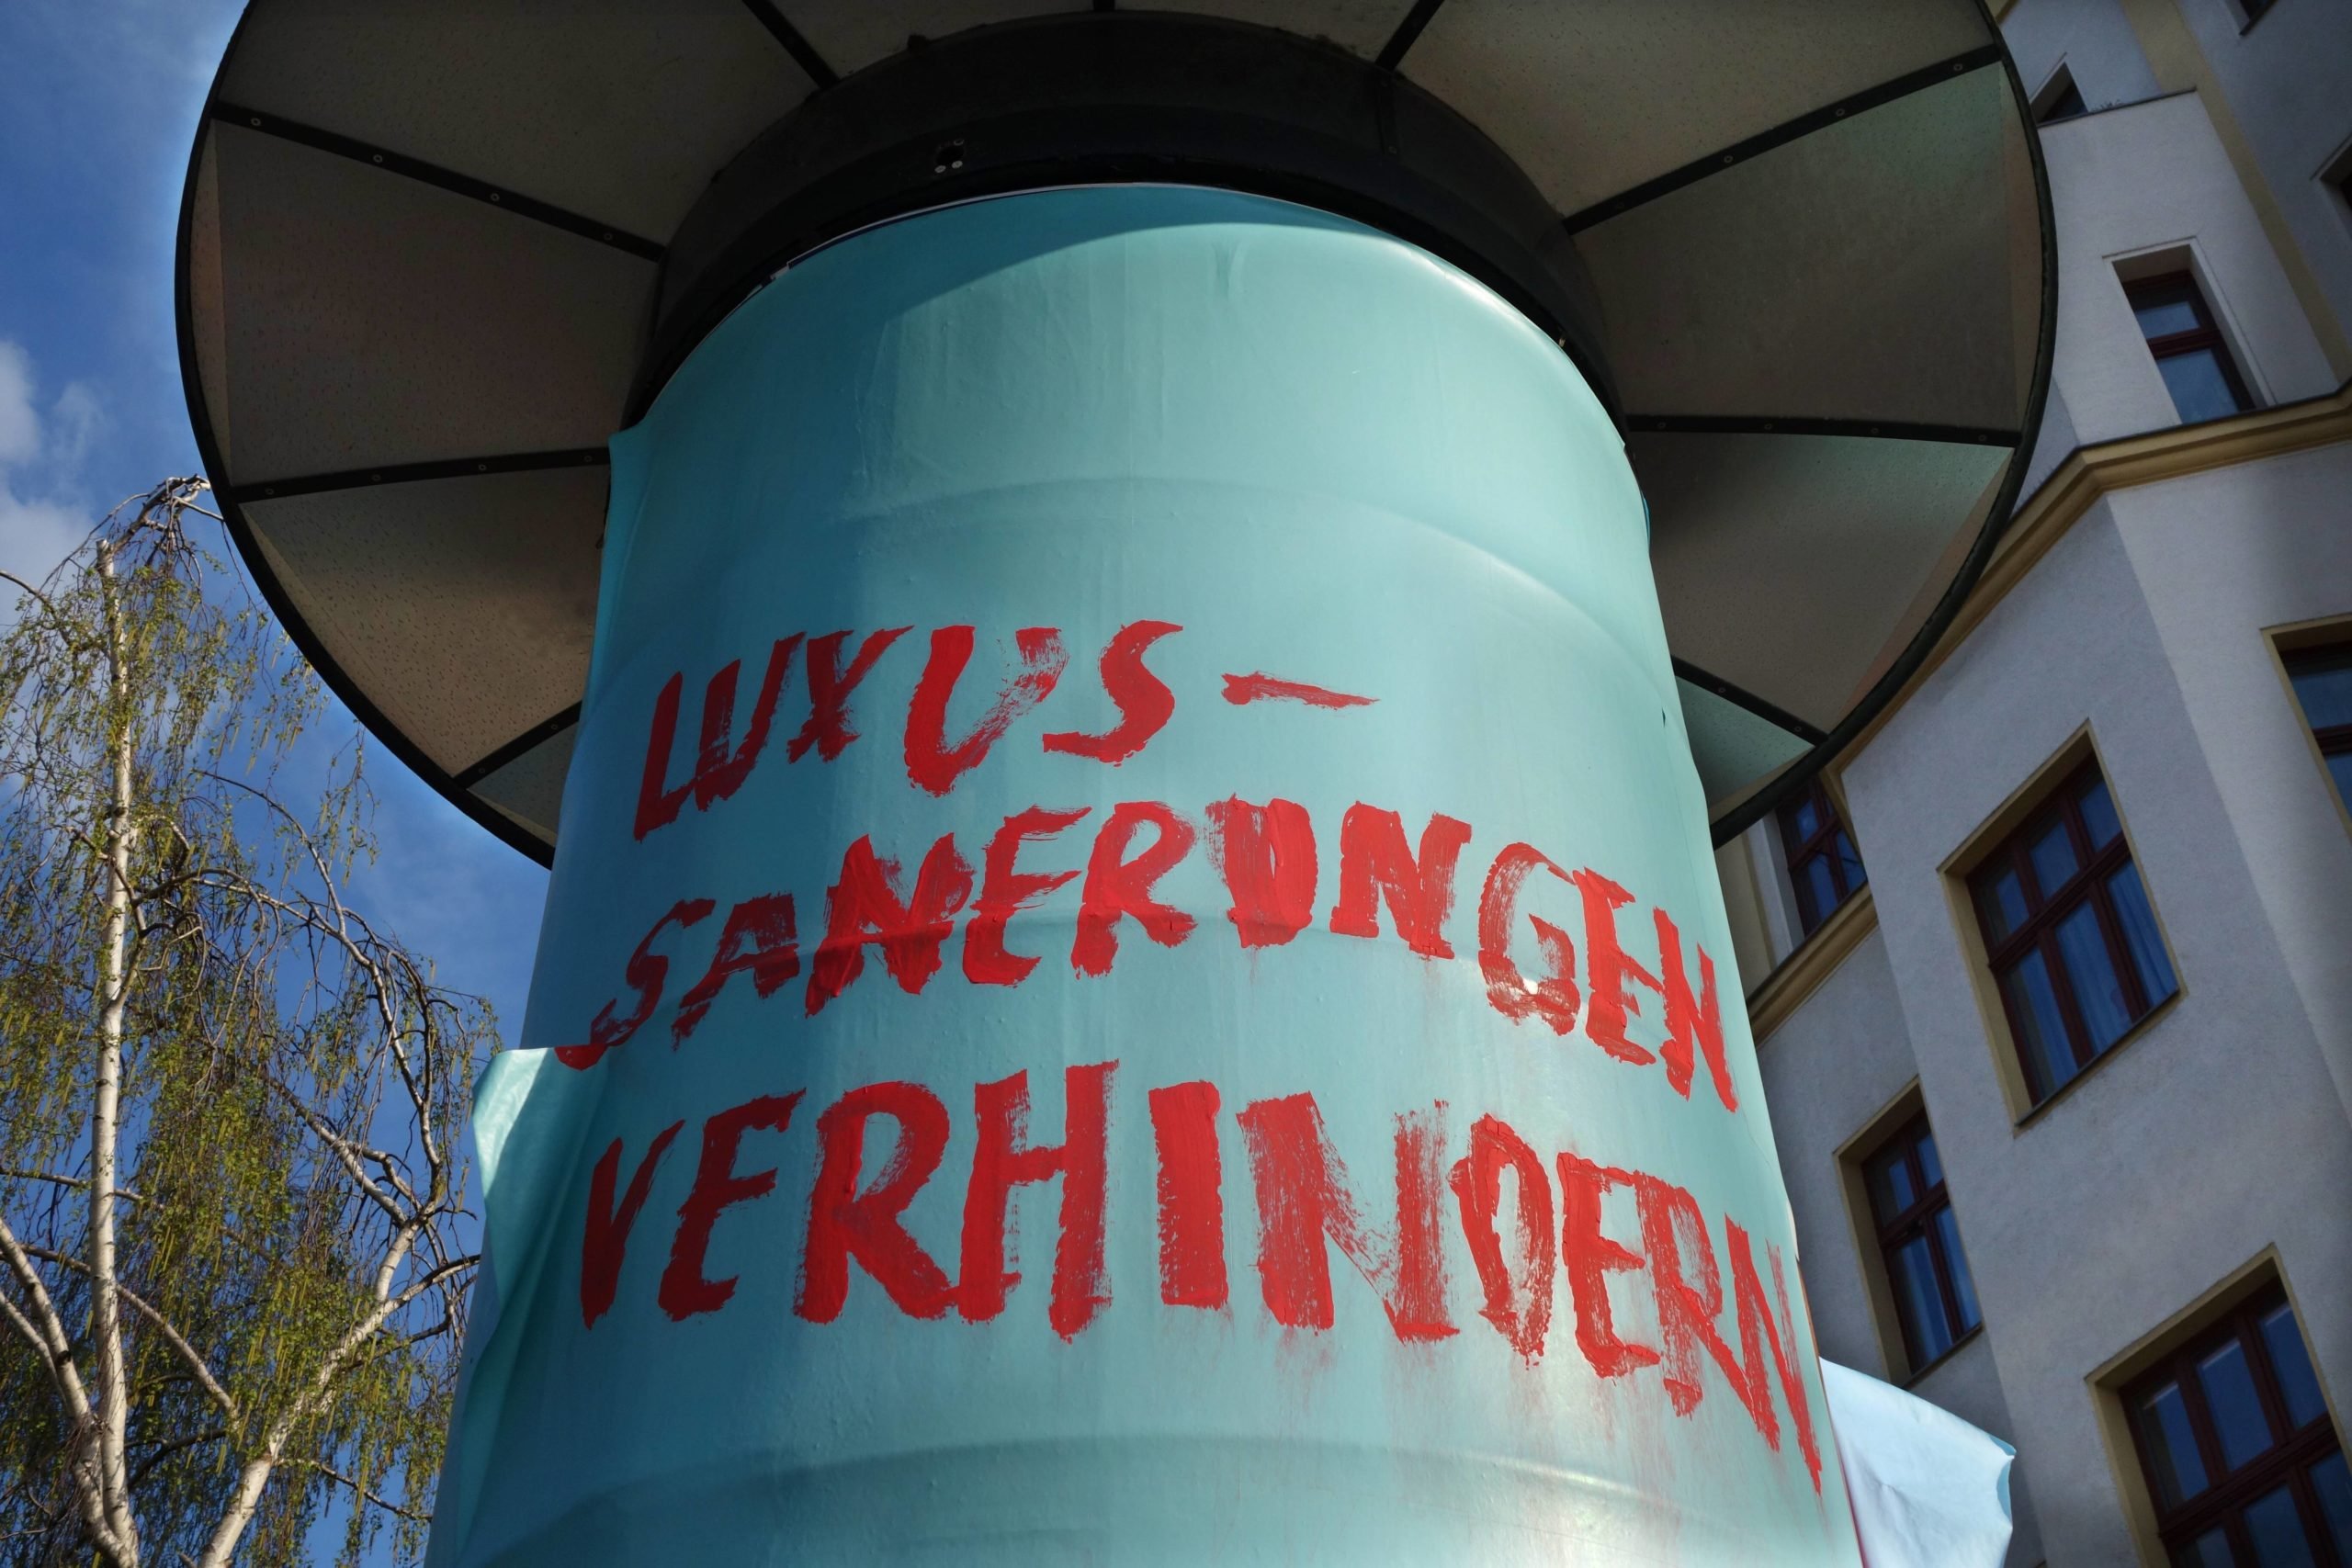 Litfaßsäulen in Berlin: Anschlag an einer Litfaßsäule in Mitte mit der Aufschrift: Luxus-Sanierungen verhindern. Foto: Imago/Müller-Stauffenberg